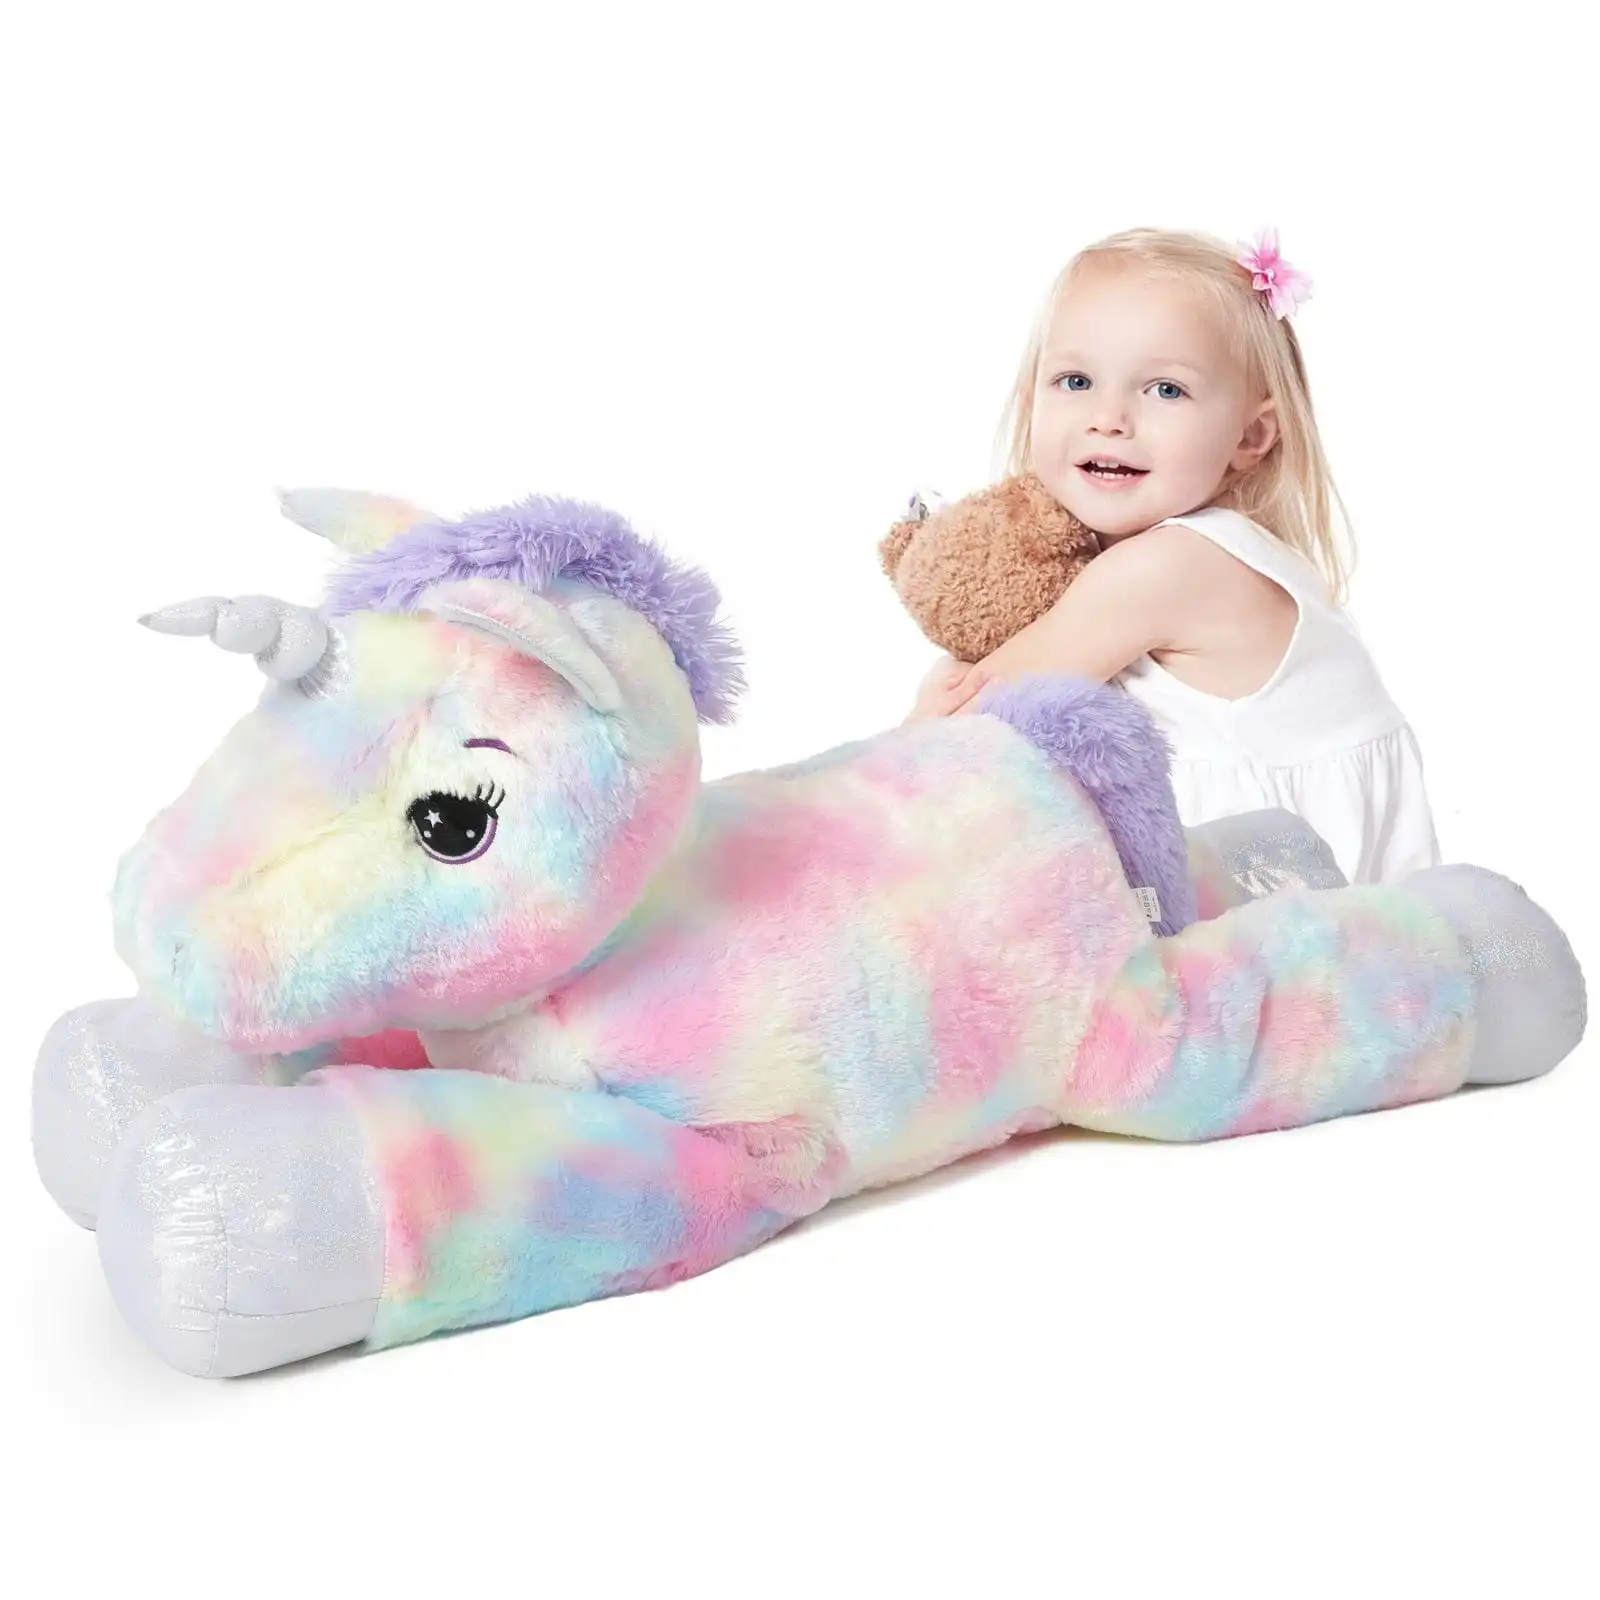 105cm Jumbo Lying Unicorn Soft Plush Toy